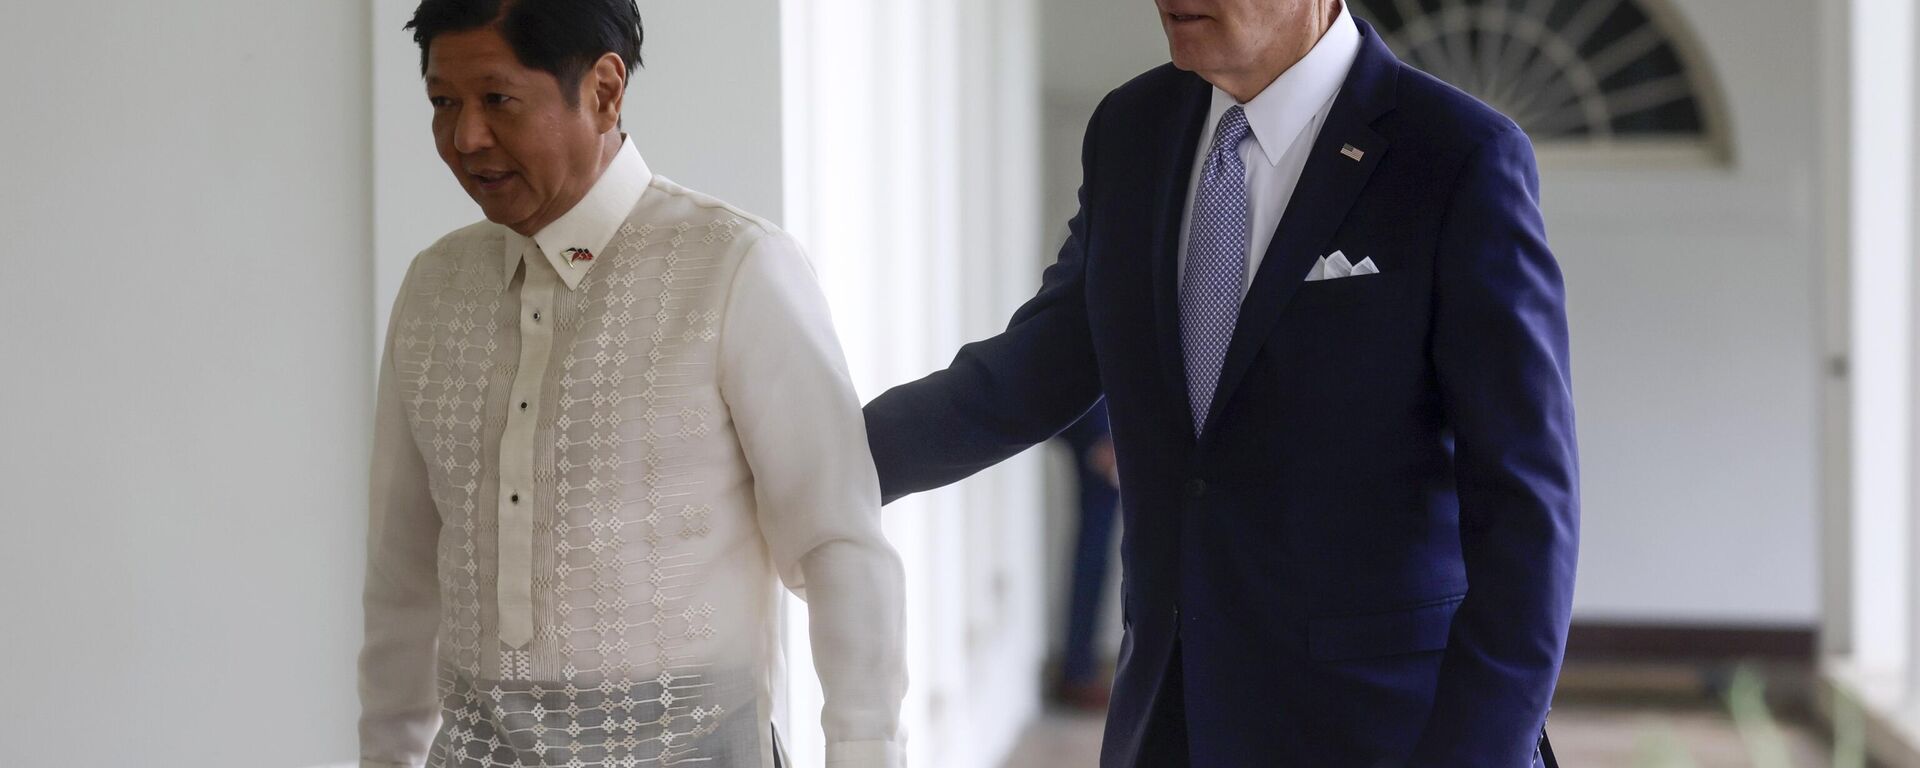 O presidente Joe Biden e o presidente das Filipinas, Ferdinand Marcos Jr. caminham na Colunata Oeste até o Salão Oval após uma cerimônia de boas-vindas na Casa Branca em Washington, 1º de maio de 2023 - Sputnik Brasil, 1920, 05.09.2023